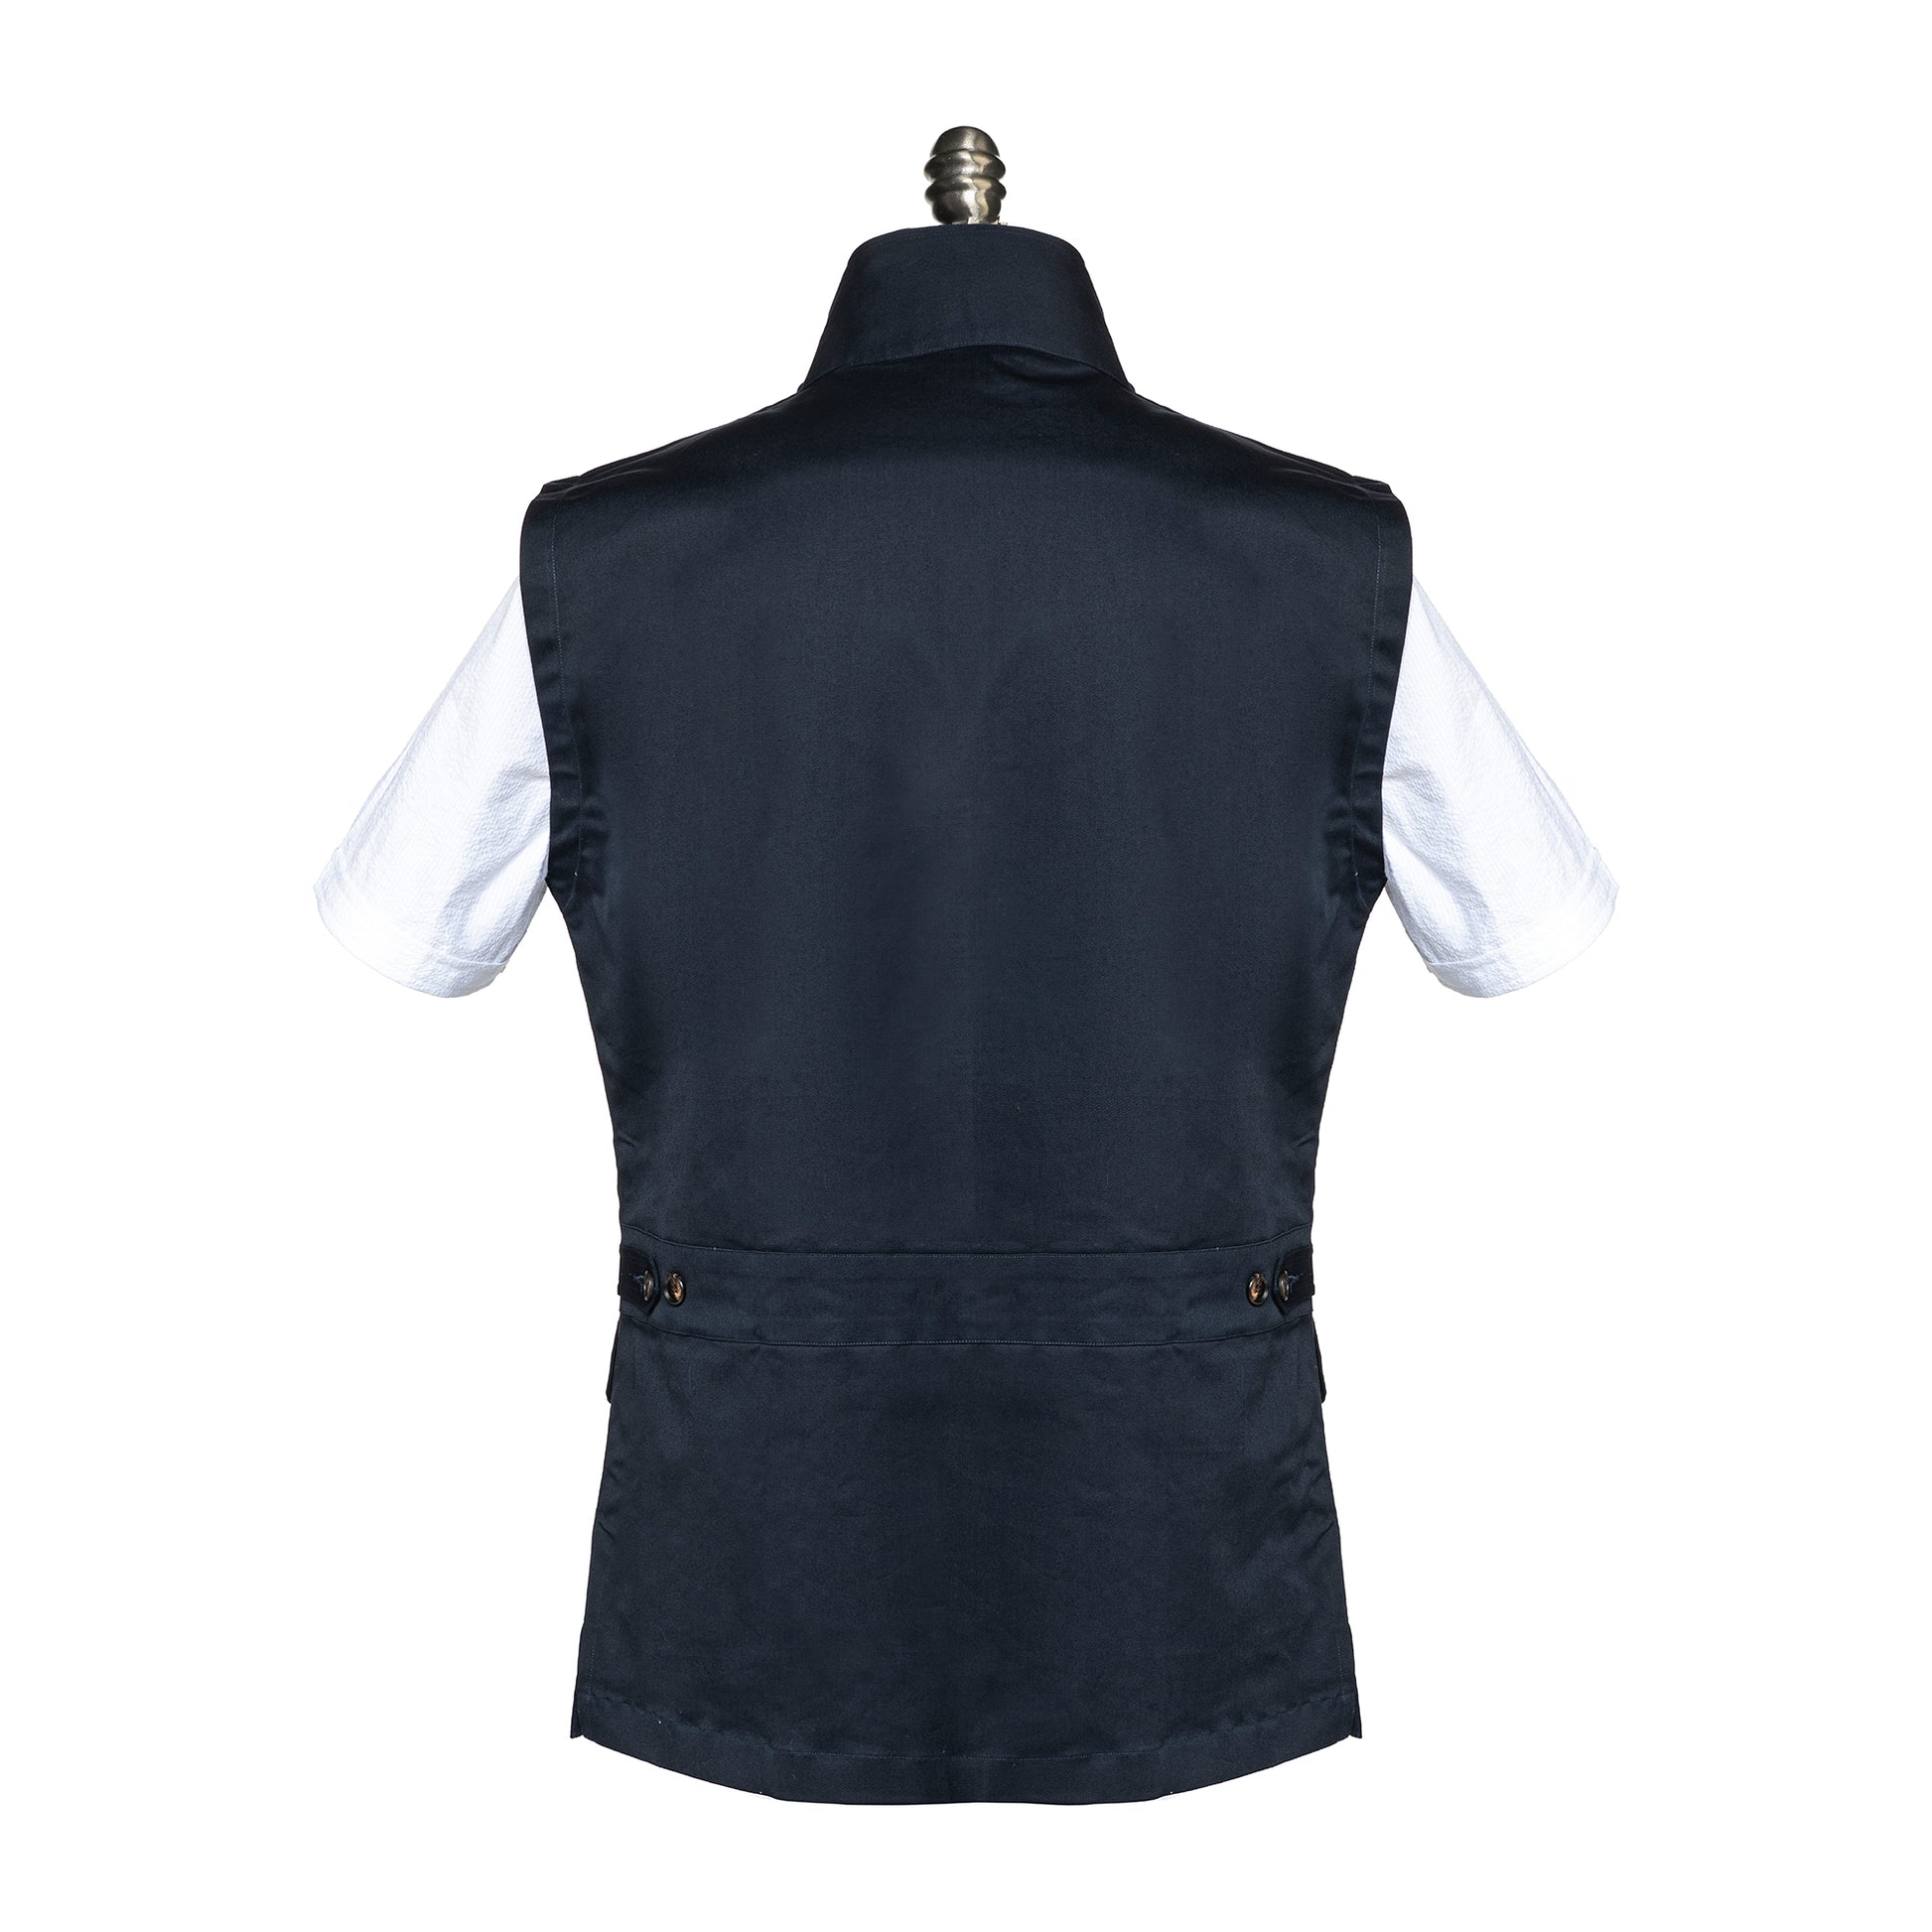 3 Pocket Utility Vest in Navy Blue color.